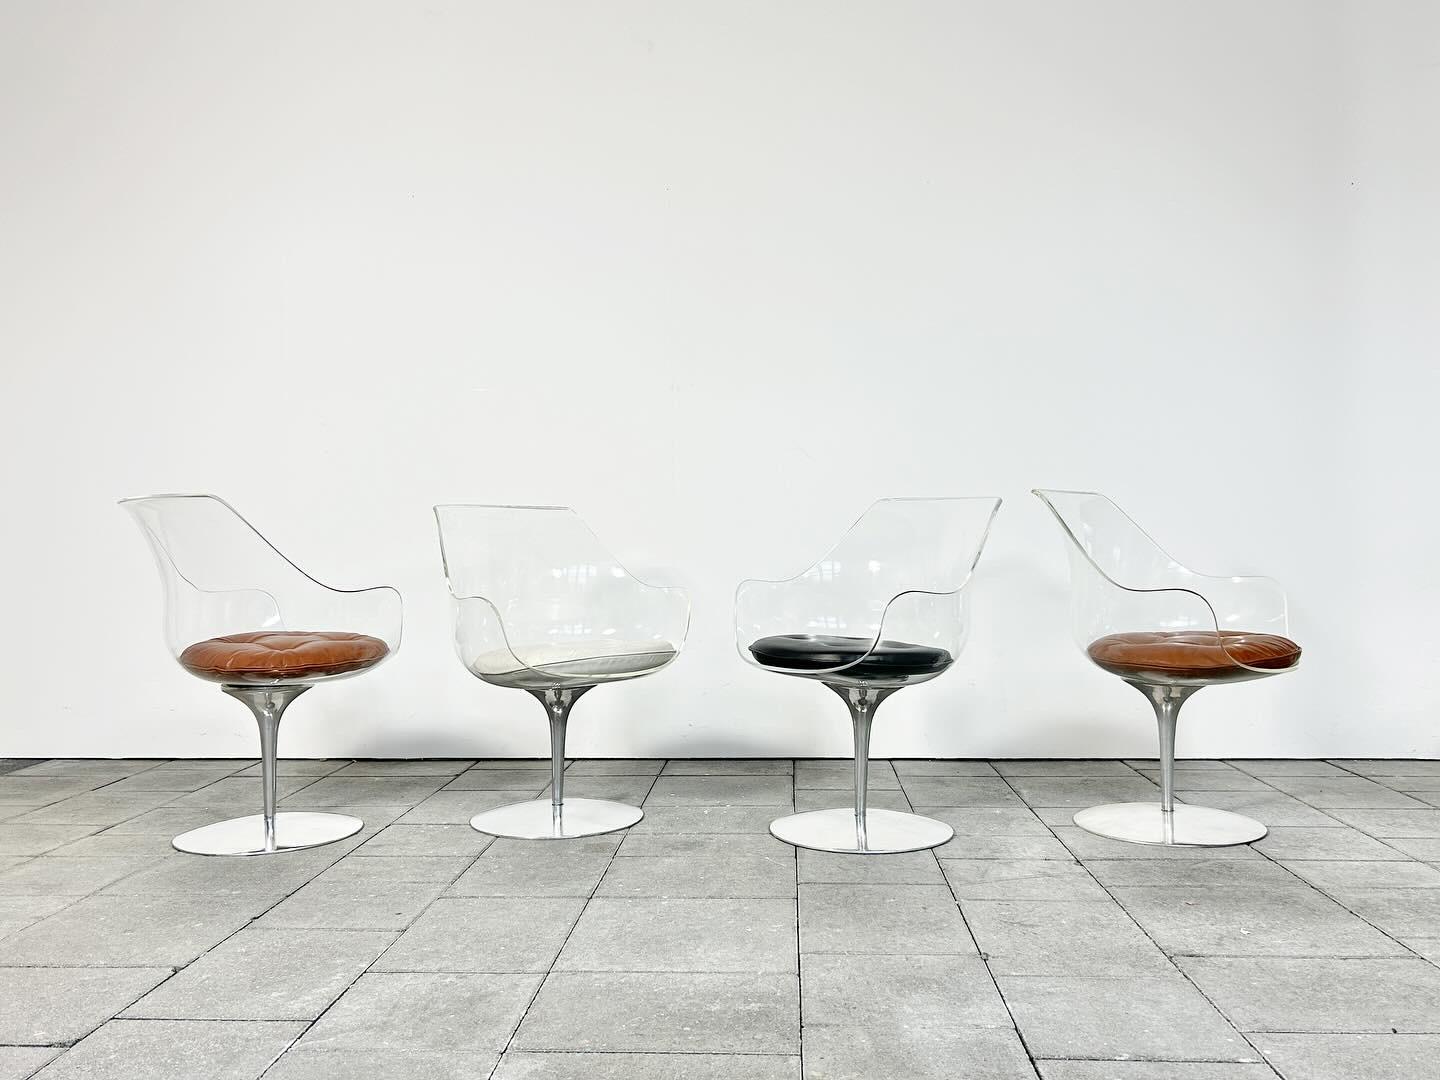 Satz von vier Champagner-Stühlen aus Lucite, entworfen von Erwine & Estelle Laverne, um 1960.

hergestellt von Formes Nouvelles in Frankreich.

Wir haben ein 2. Set von vier Champanger Stühlen zum Verkauf, die Sie in unserem Schaufenster hier auf